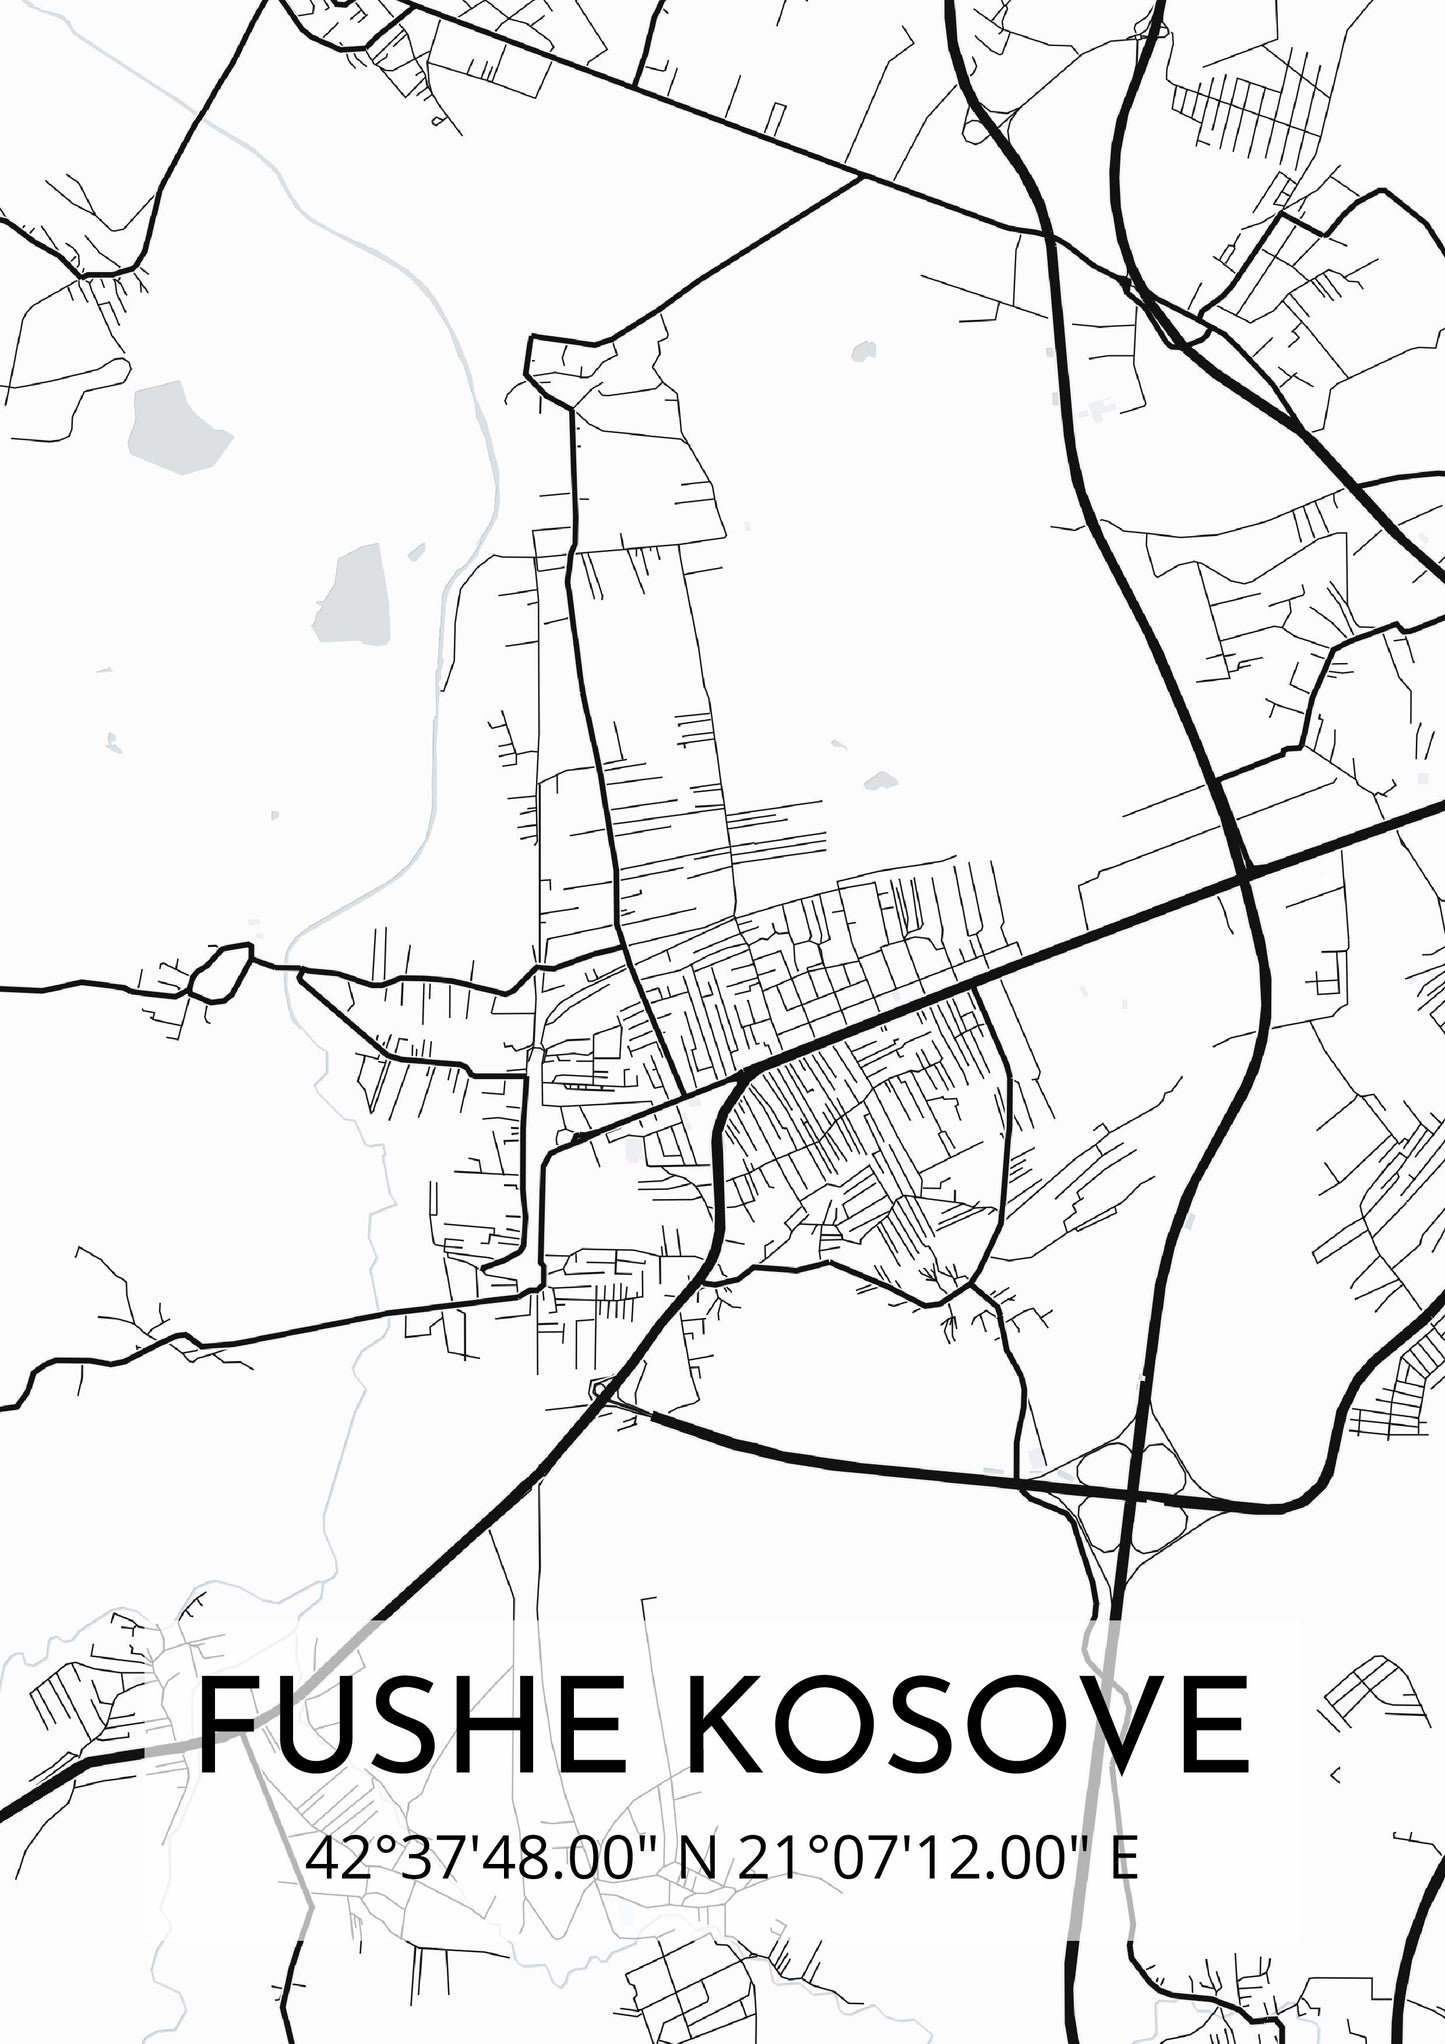 Fushe kosove